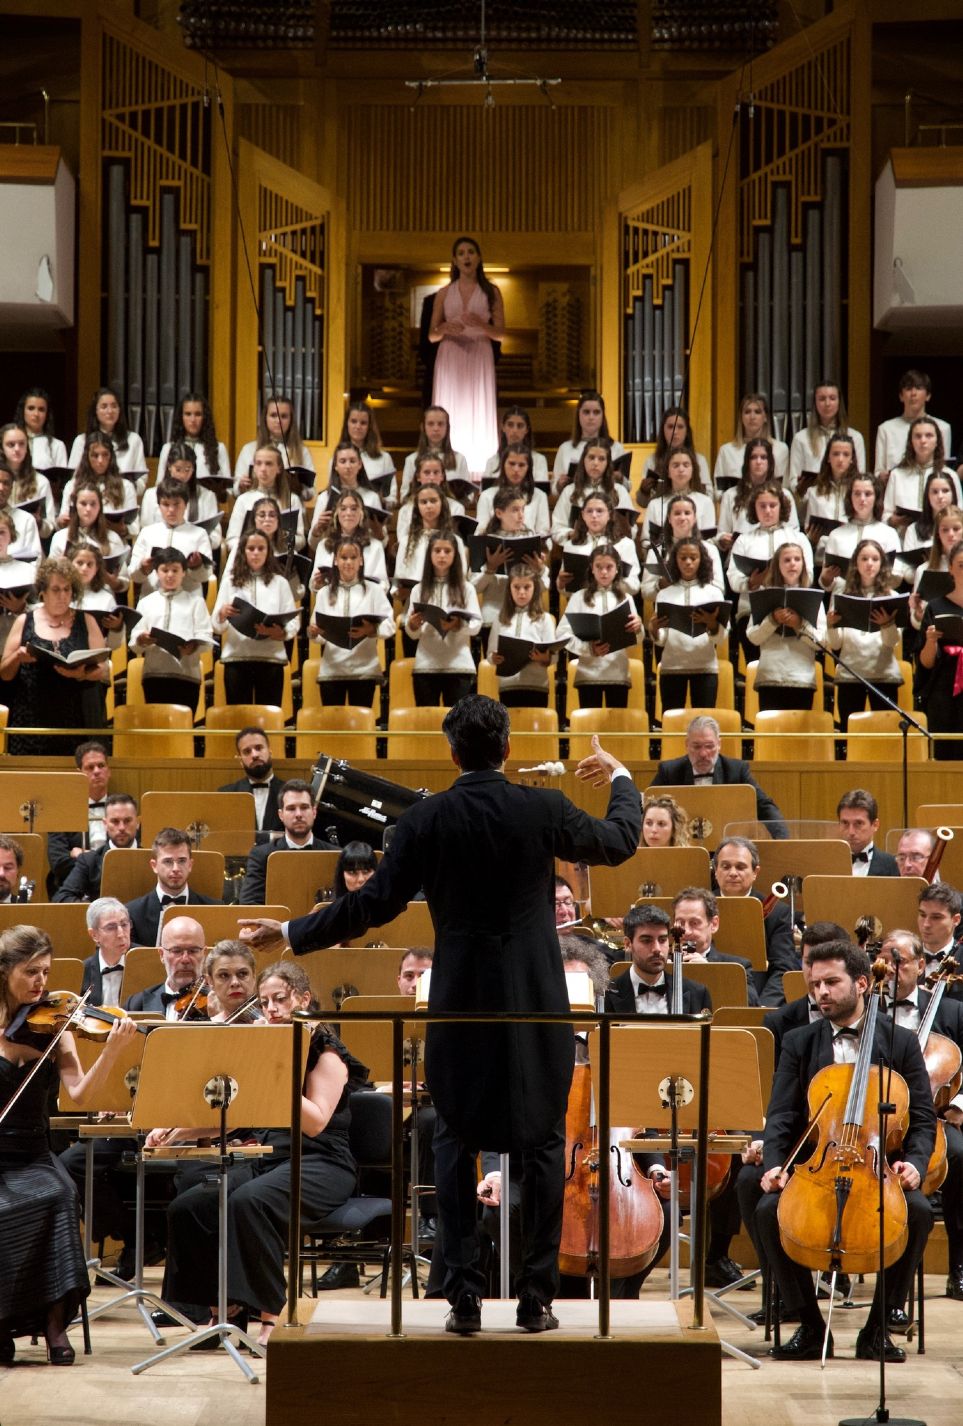 La OCNE interpreta la «Sinfonía nº 8» de Mahler